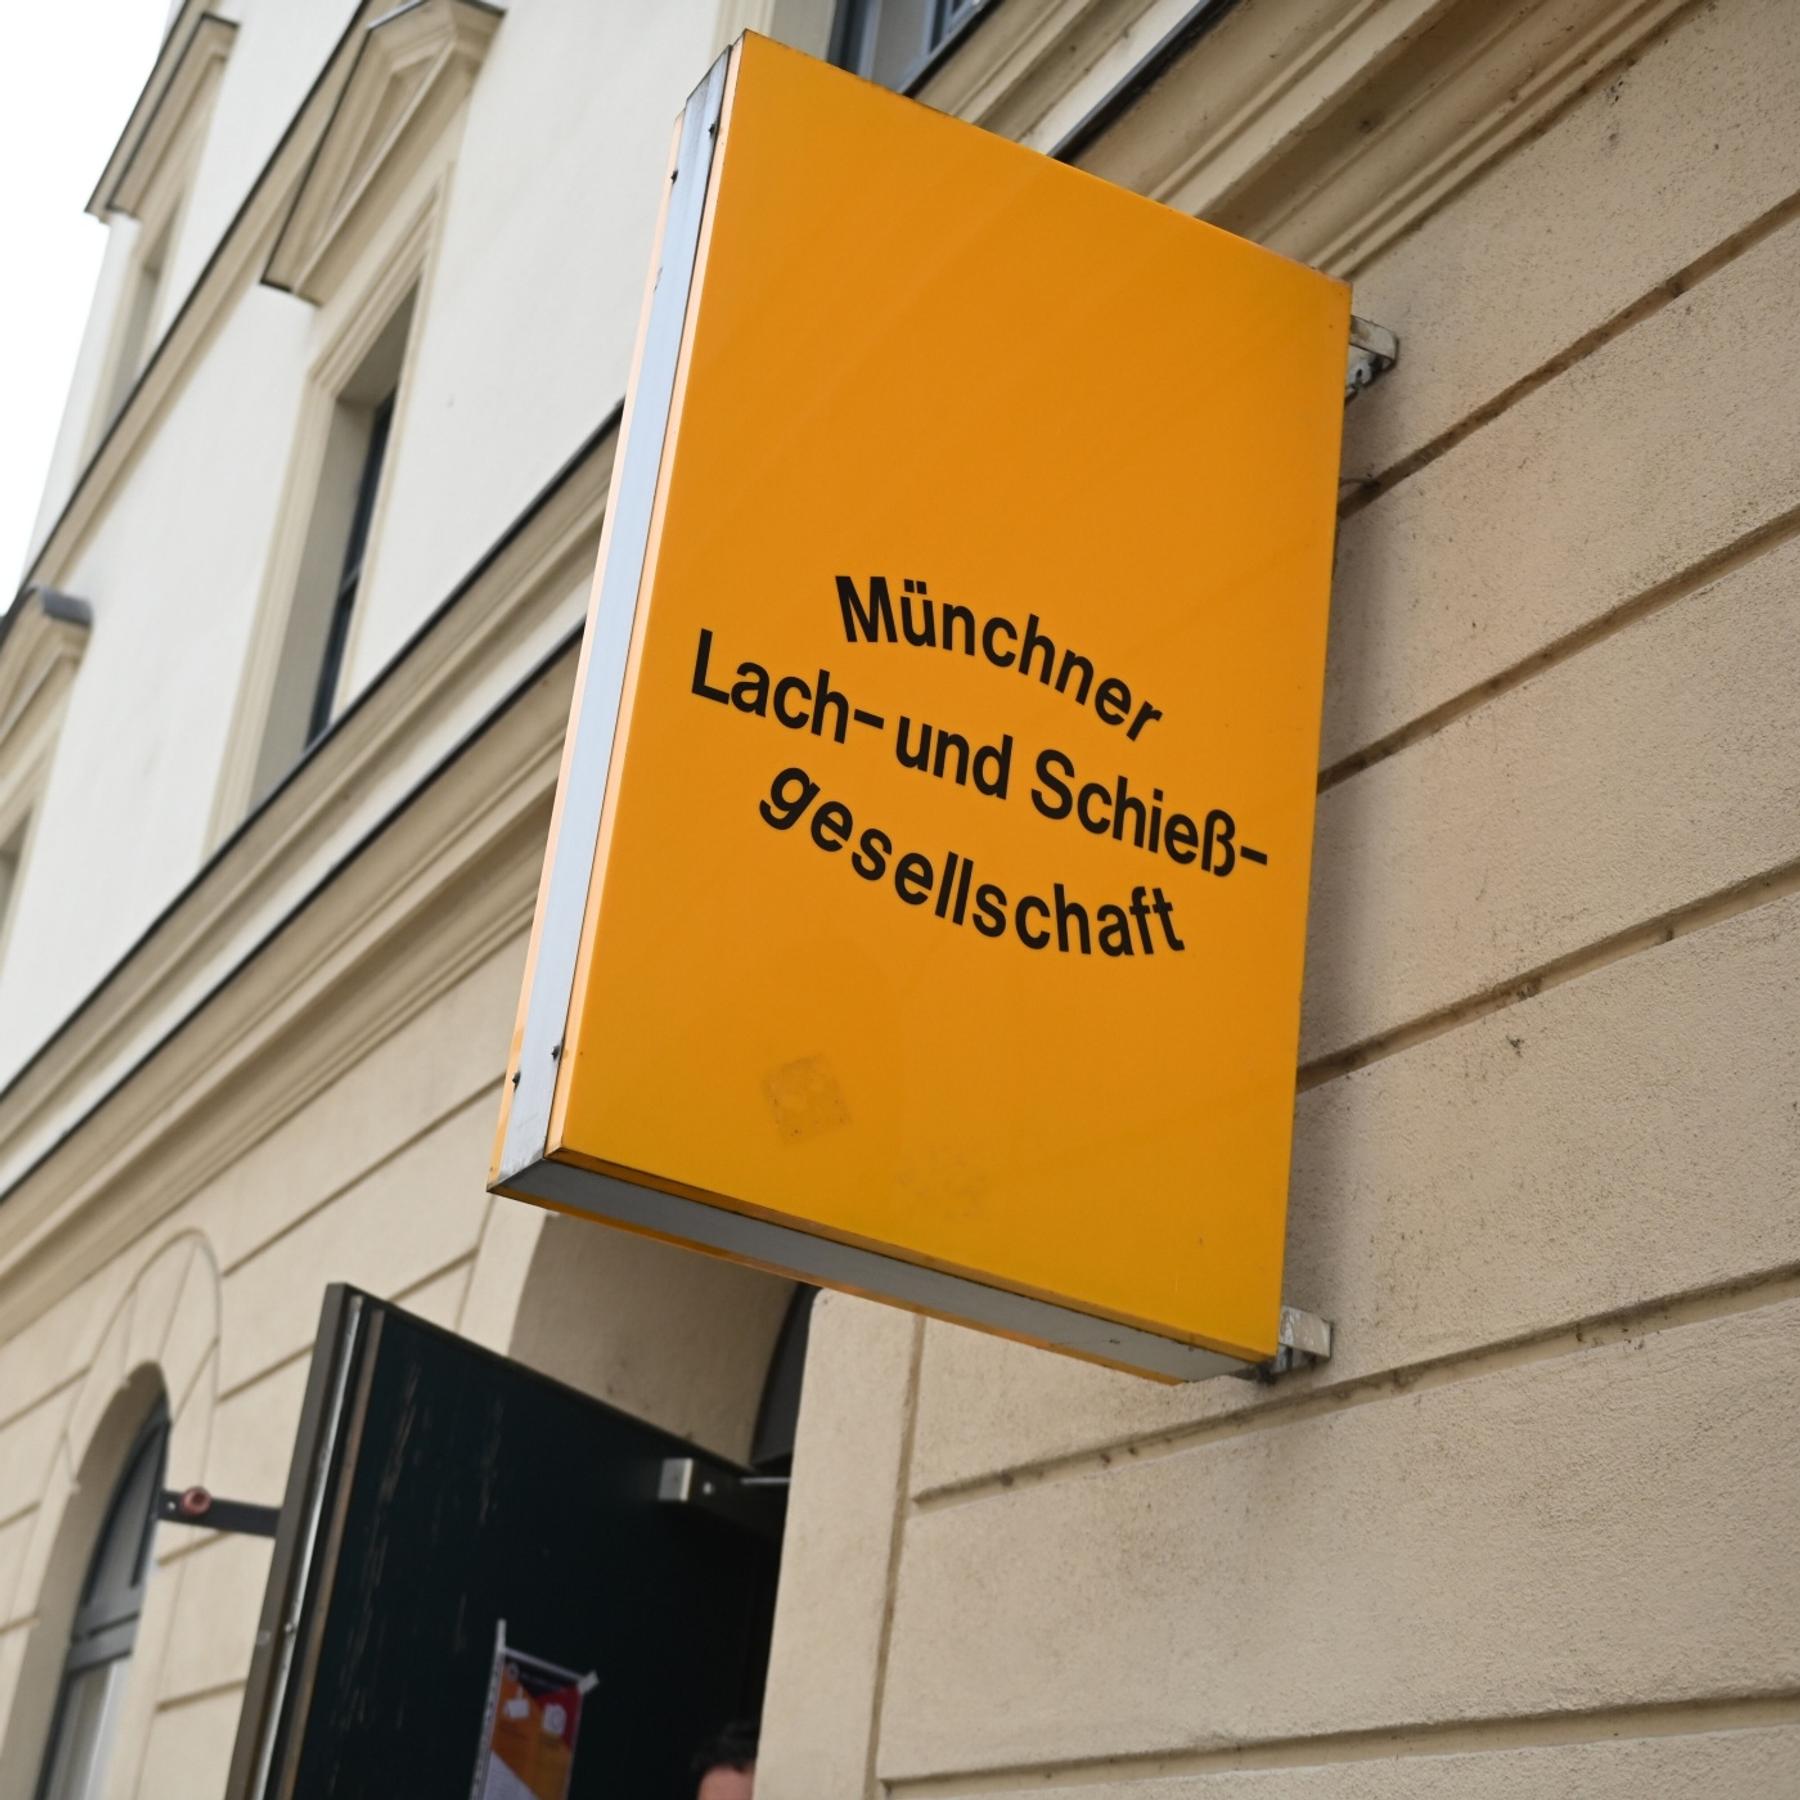 „Abgespeckt”: Das WiederbeLebenszeichen der Münchner Lach- und Schießgesellschaft